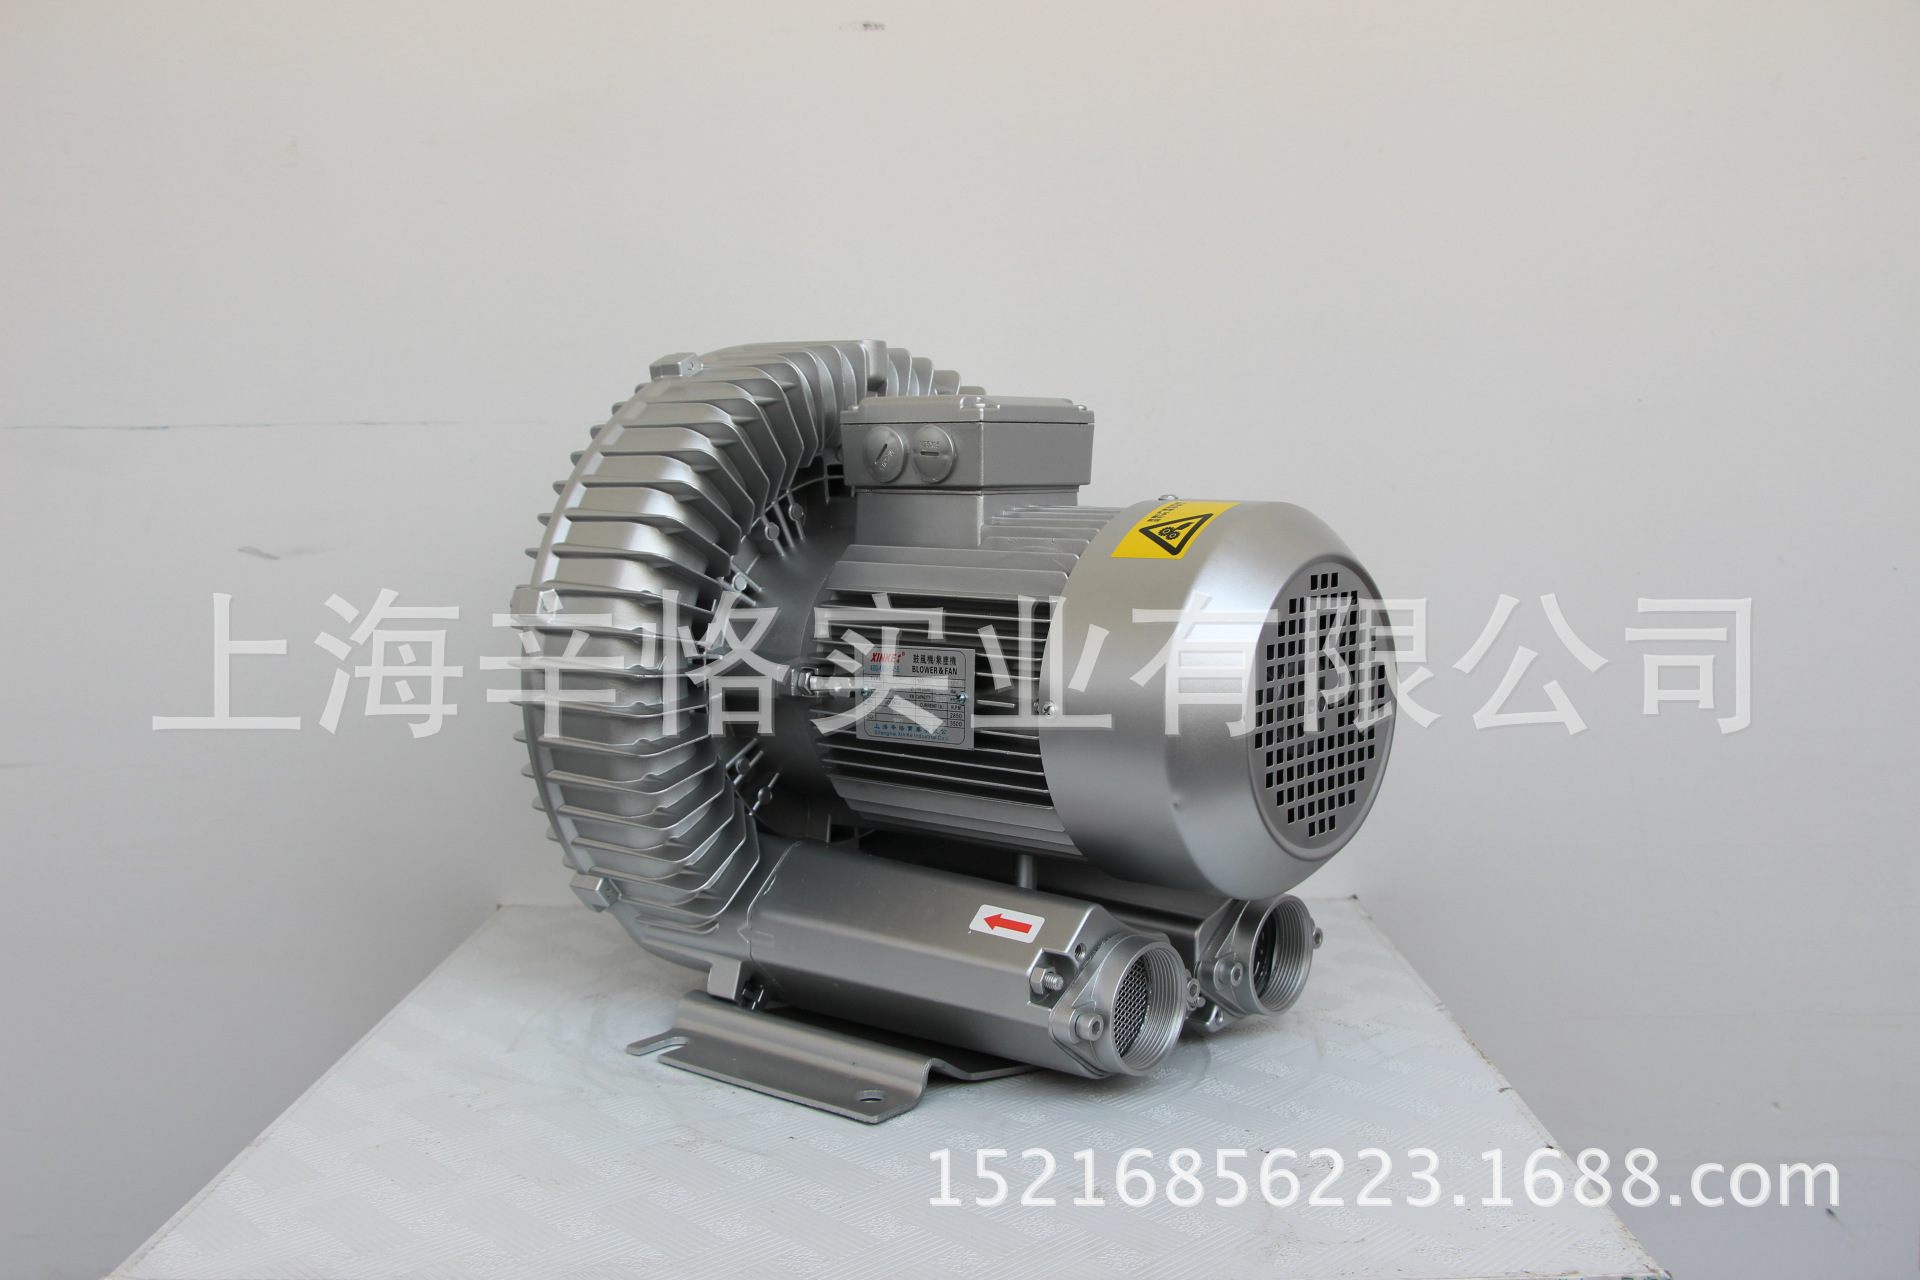 XK17-H3 3.0KW多功能高压风机 漩涡气泵 环形鼓风机 旋涡鼓风机 漩涡鼓风机